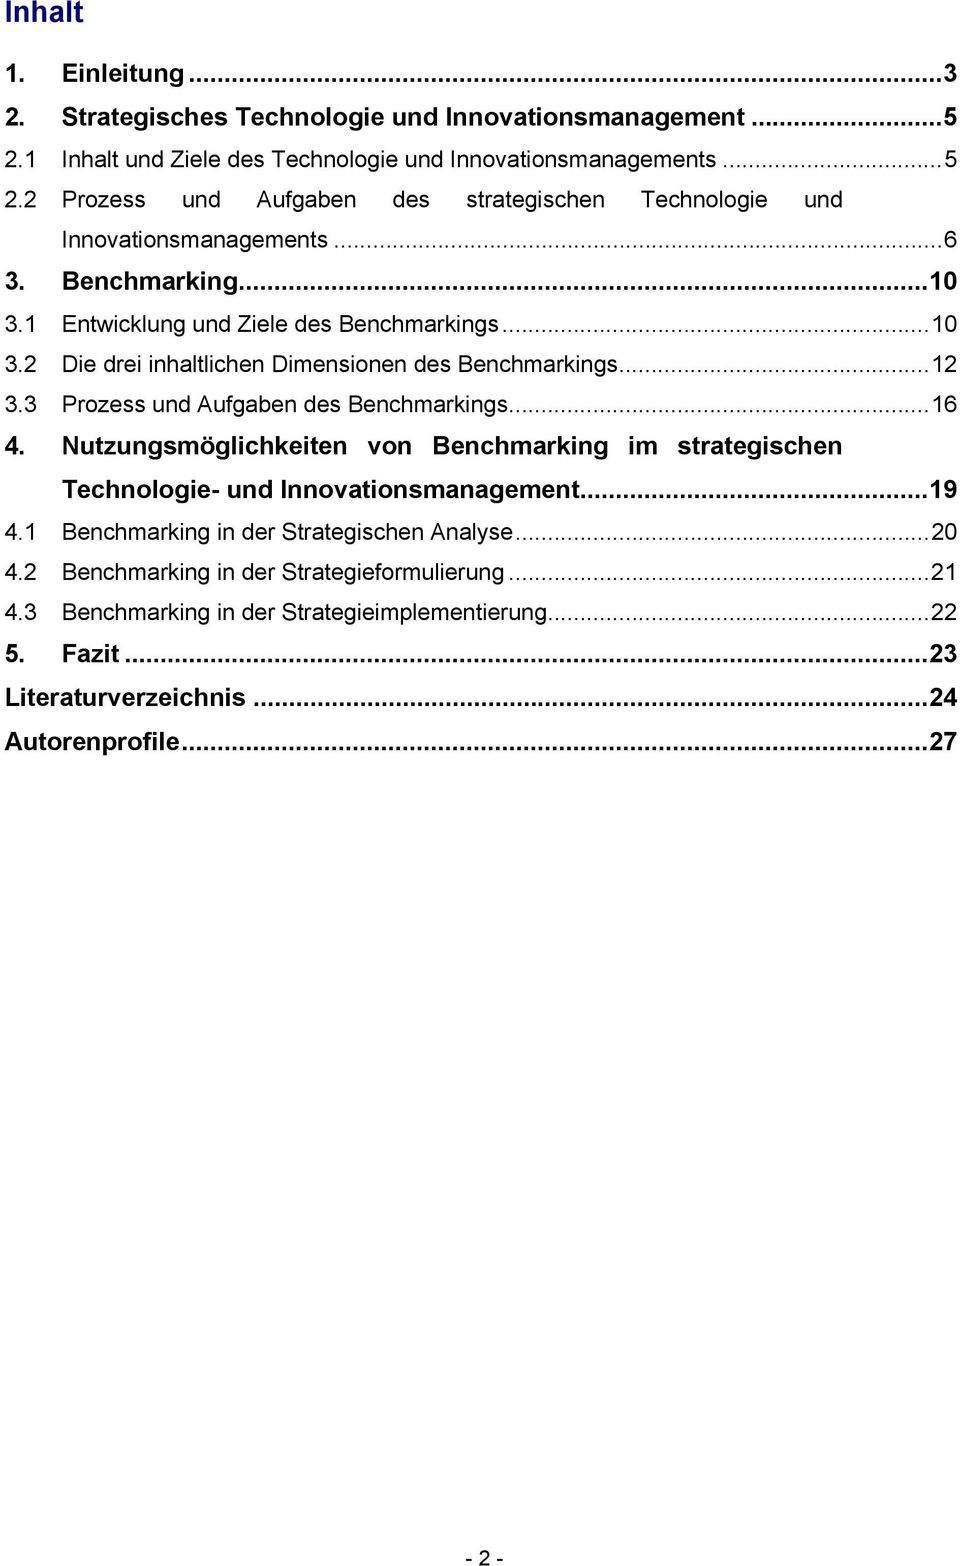 Nutzungsmöglichkeiten von Benchmarking im strategischen Technologie- und Innovationsmanagement...19 4.1 Benchmarking in der Strategischen Analyse...20 4.